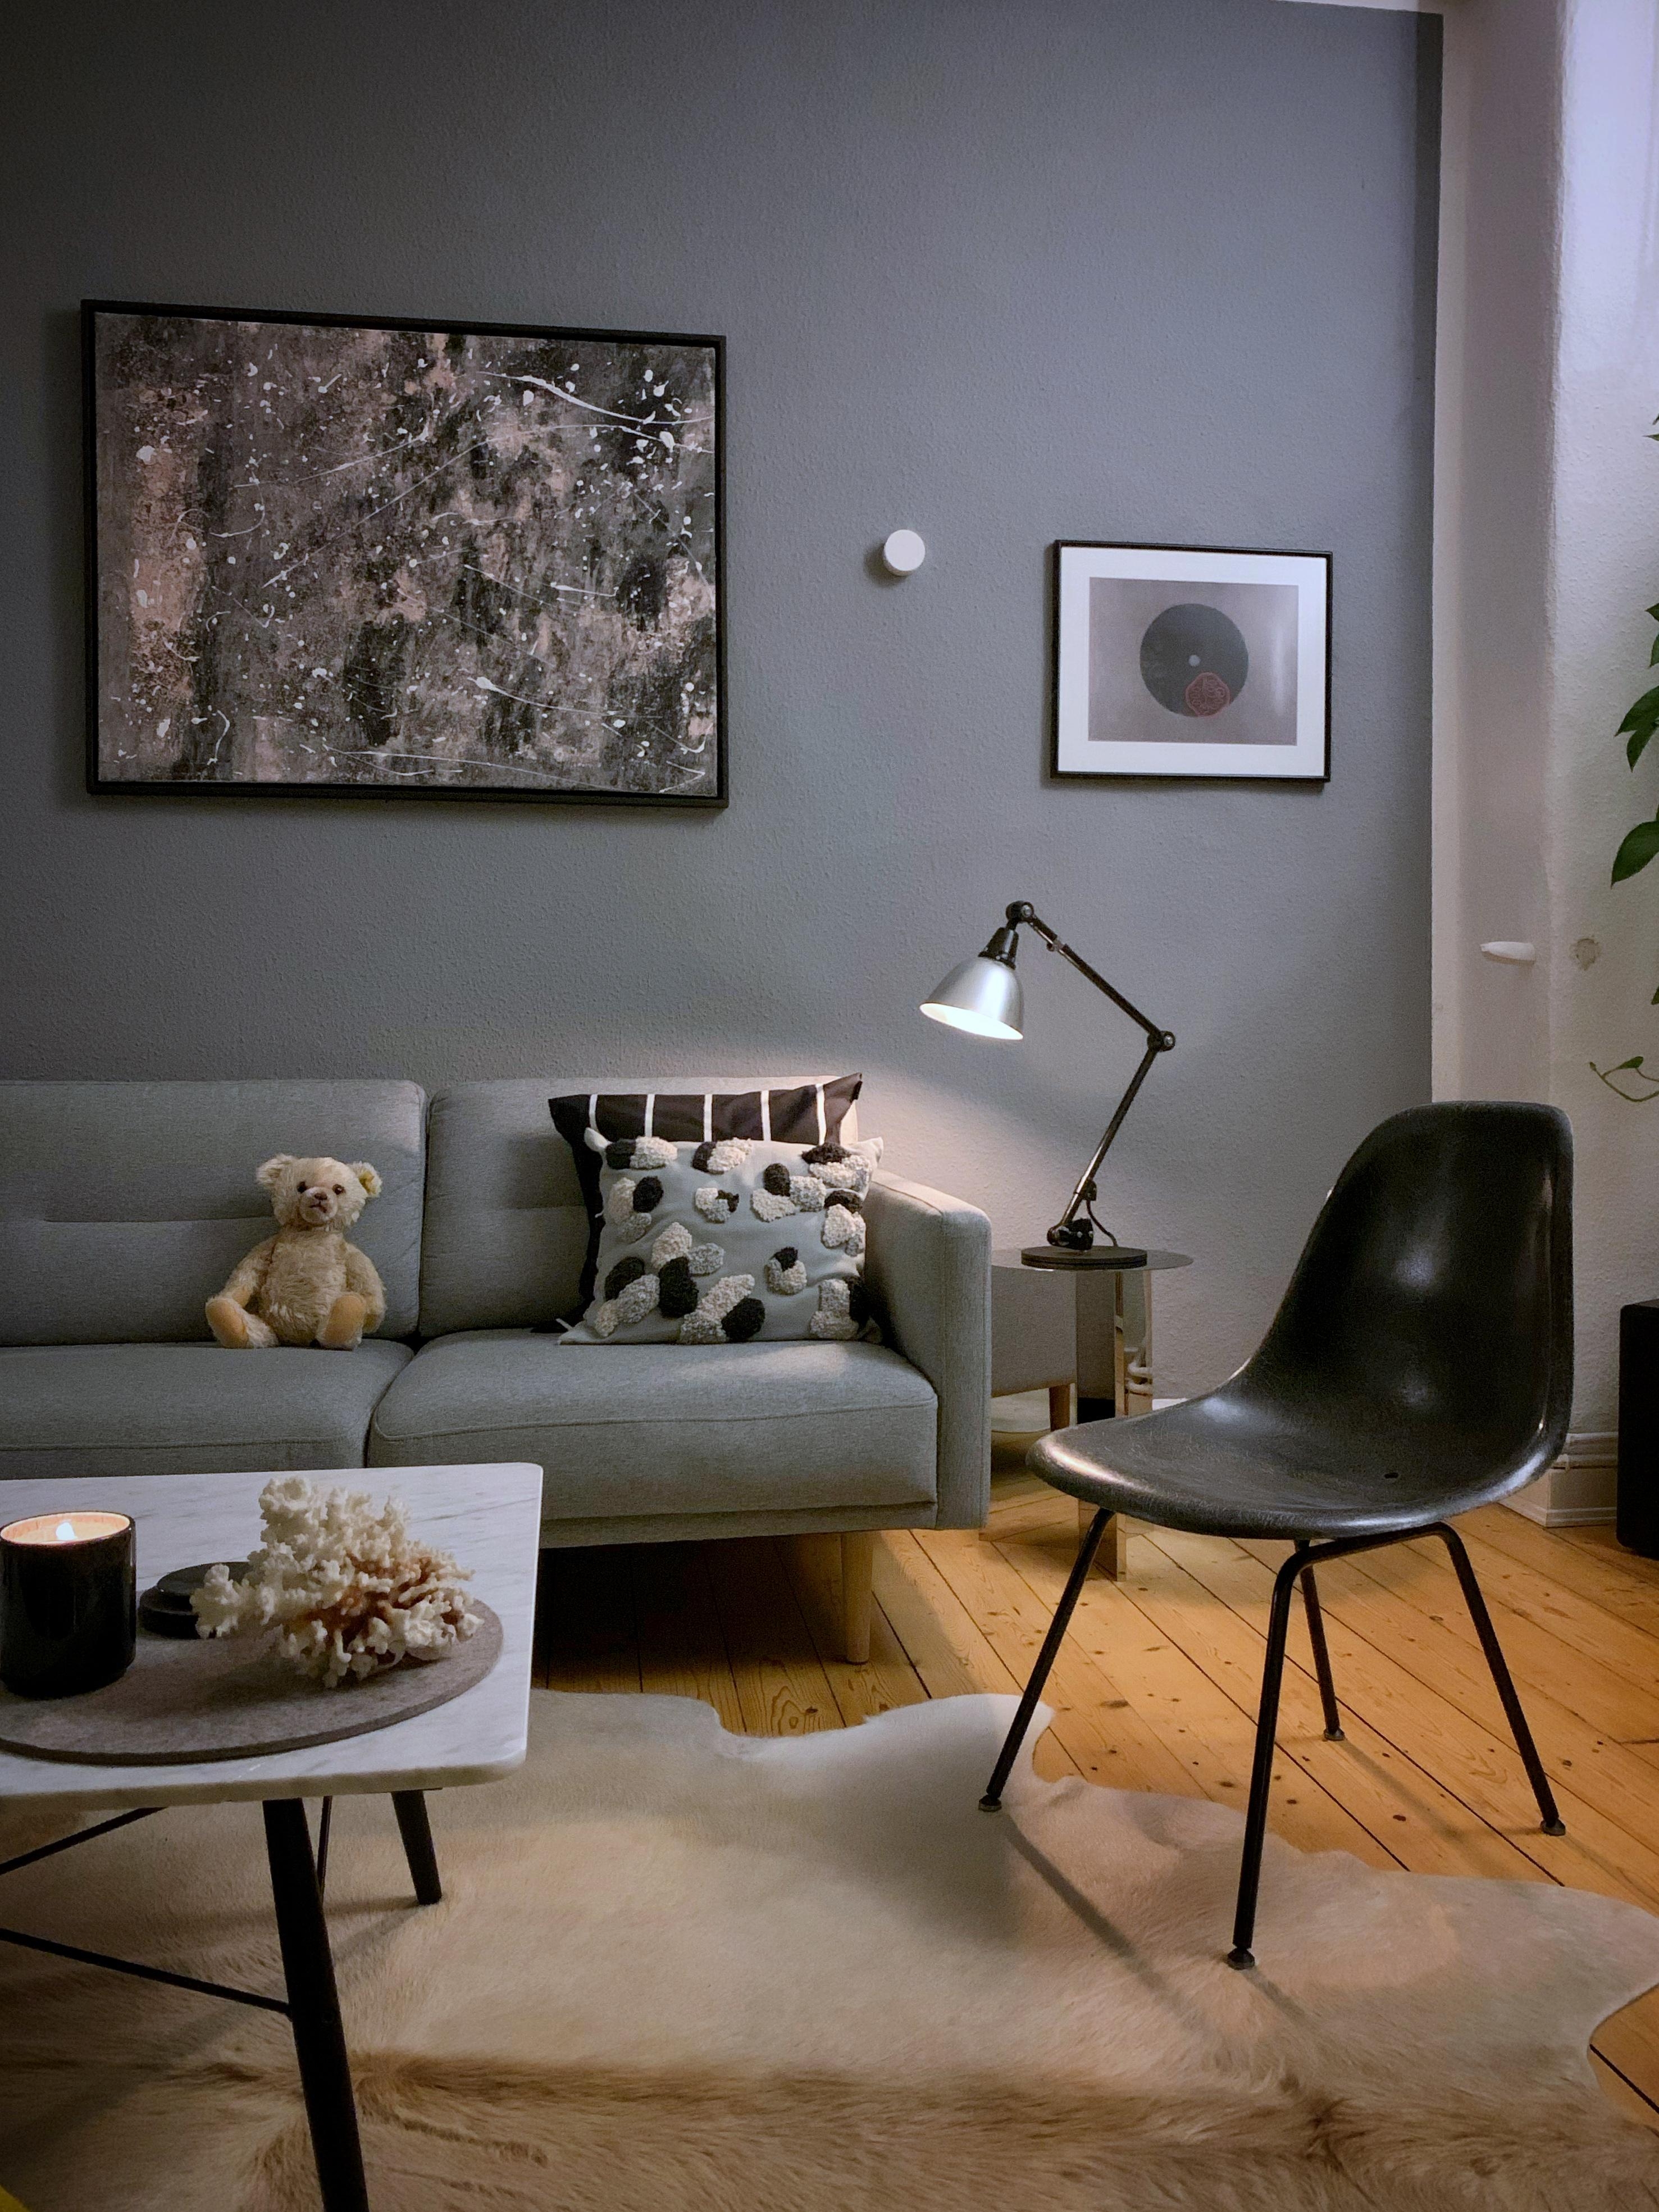 Die klassische Ecke. Selbst der Steiff Teddy fühlt sich wohl. #couchstyle #homesweethome #eames #hay